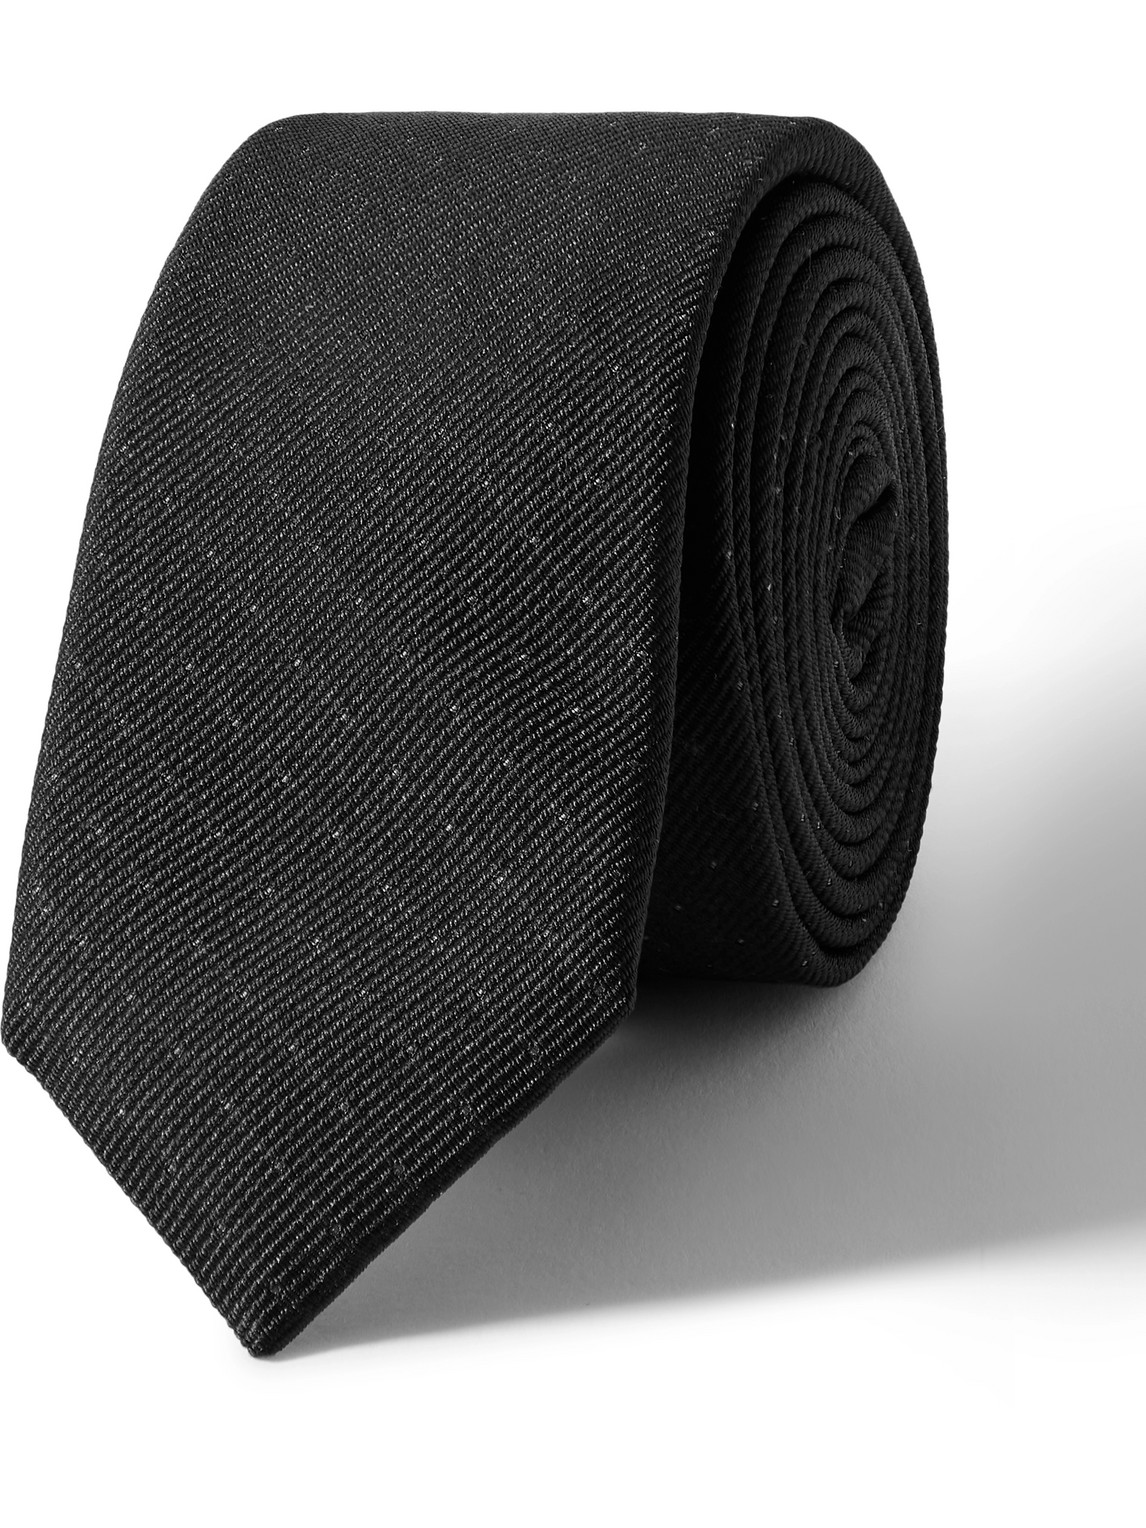 SAINT LAURENT - 5cm Polka-Dot Wool and Silk-Blend Jacquard Tie - Men - Black - L von SAINT LAURENT